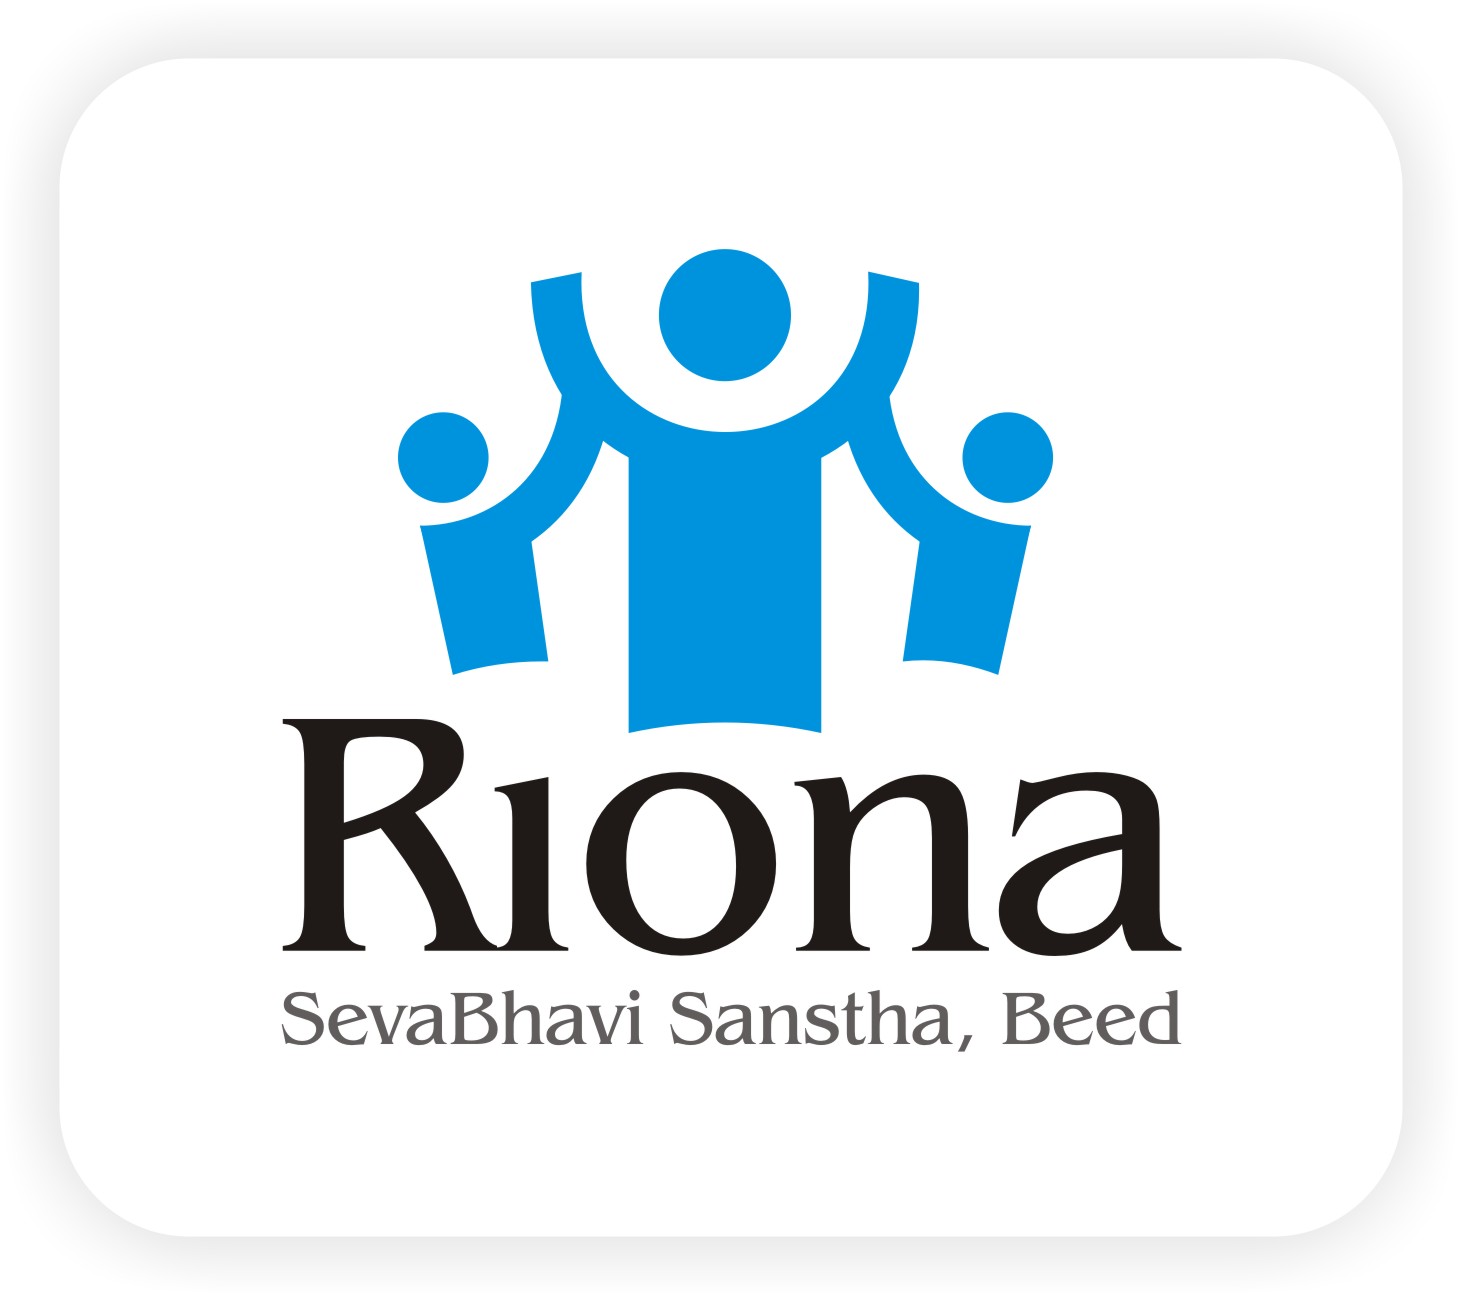 Riona Seva Bhavi Sanstha